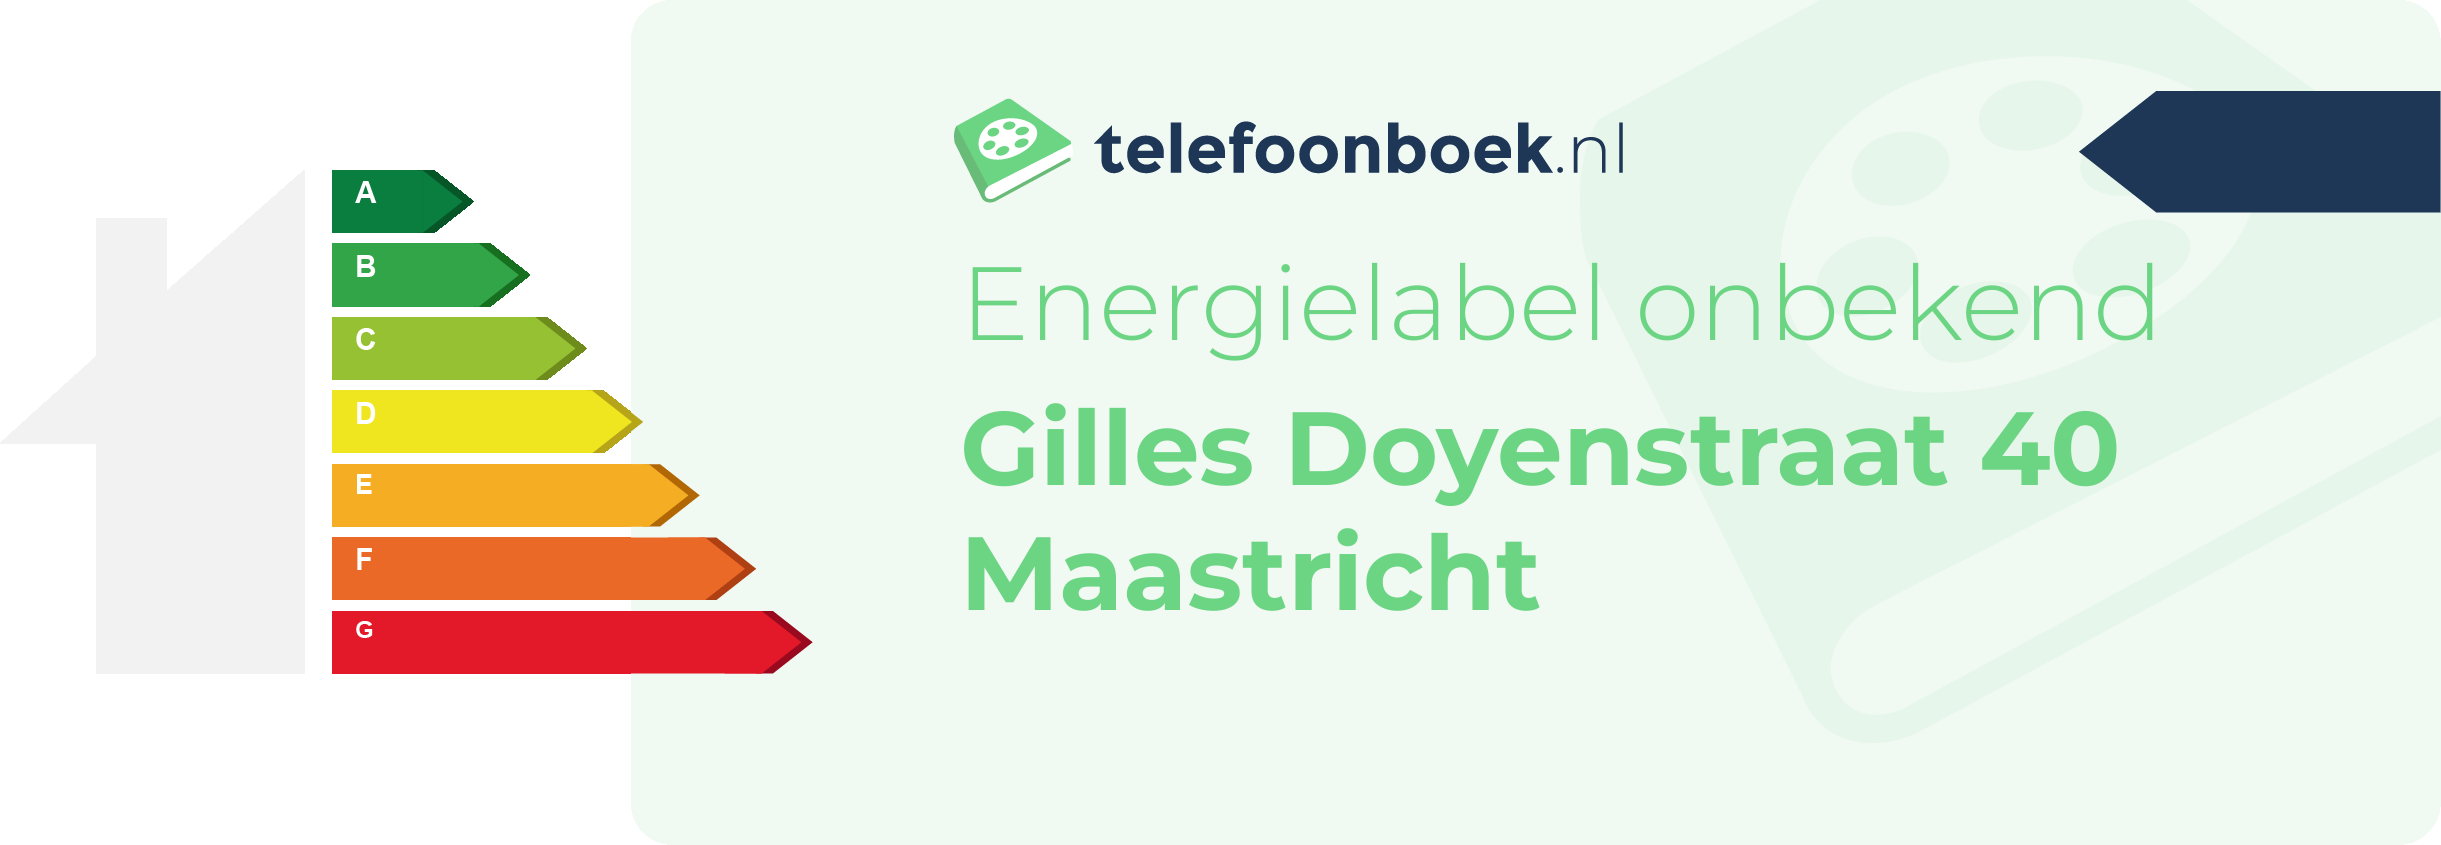 Energielabel Gilles Doyenstraat 40 Maastricht